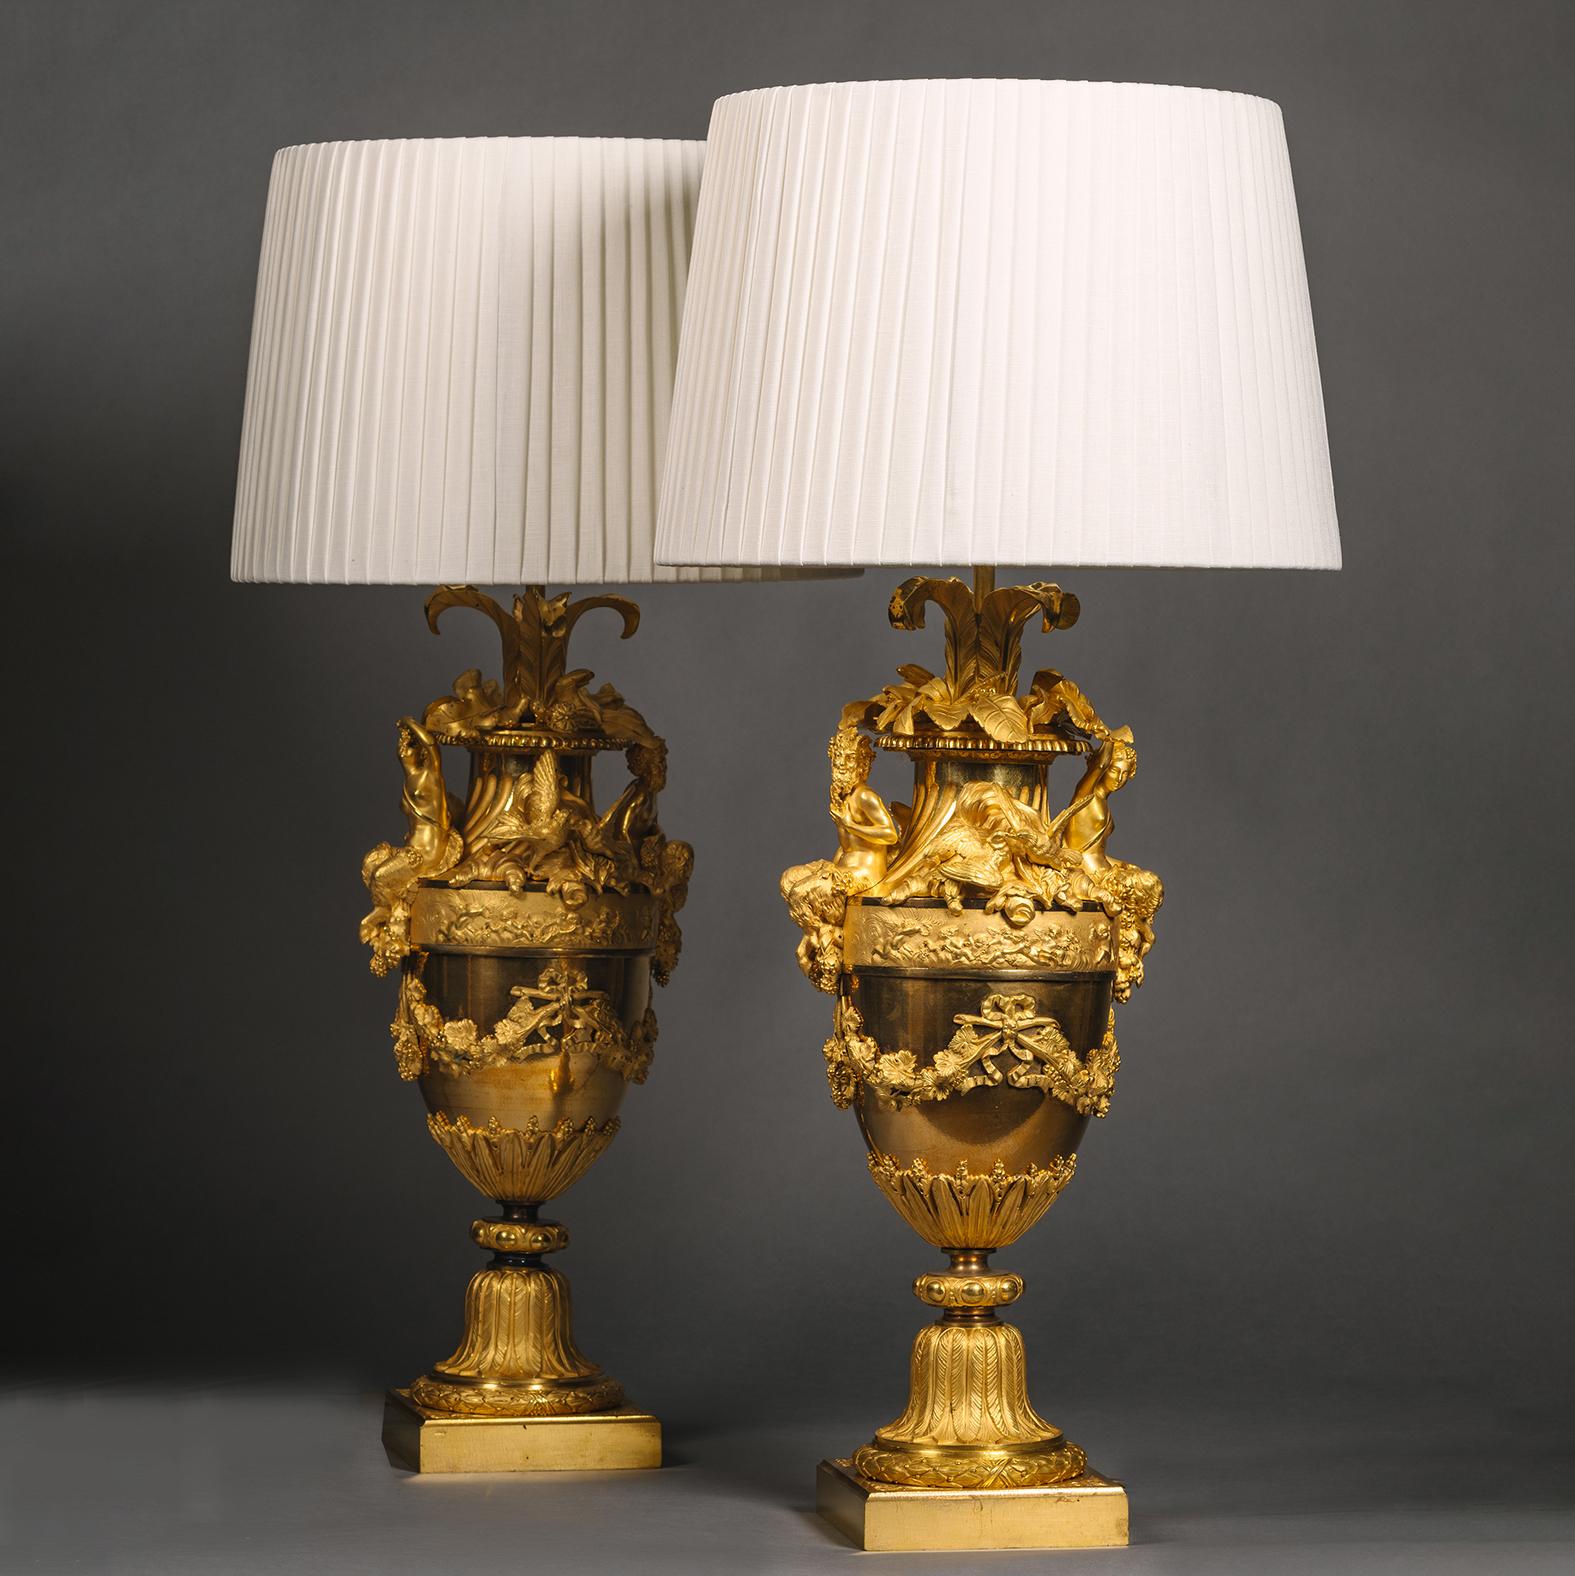 Paire de vases en bronze doré d'époque Napoléon III, montés en lampes de table, par Henri Picard. 

Ces vases présentent un travail de bronze finement détaillé avec une superbe dorure mate et brunie. Elles sont conçues dans le style Louis XVI et